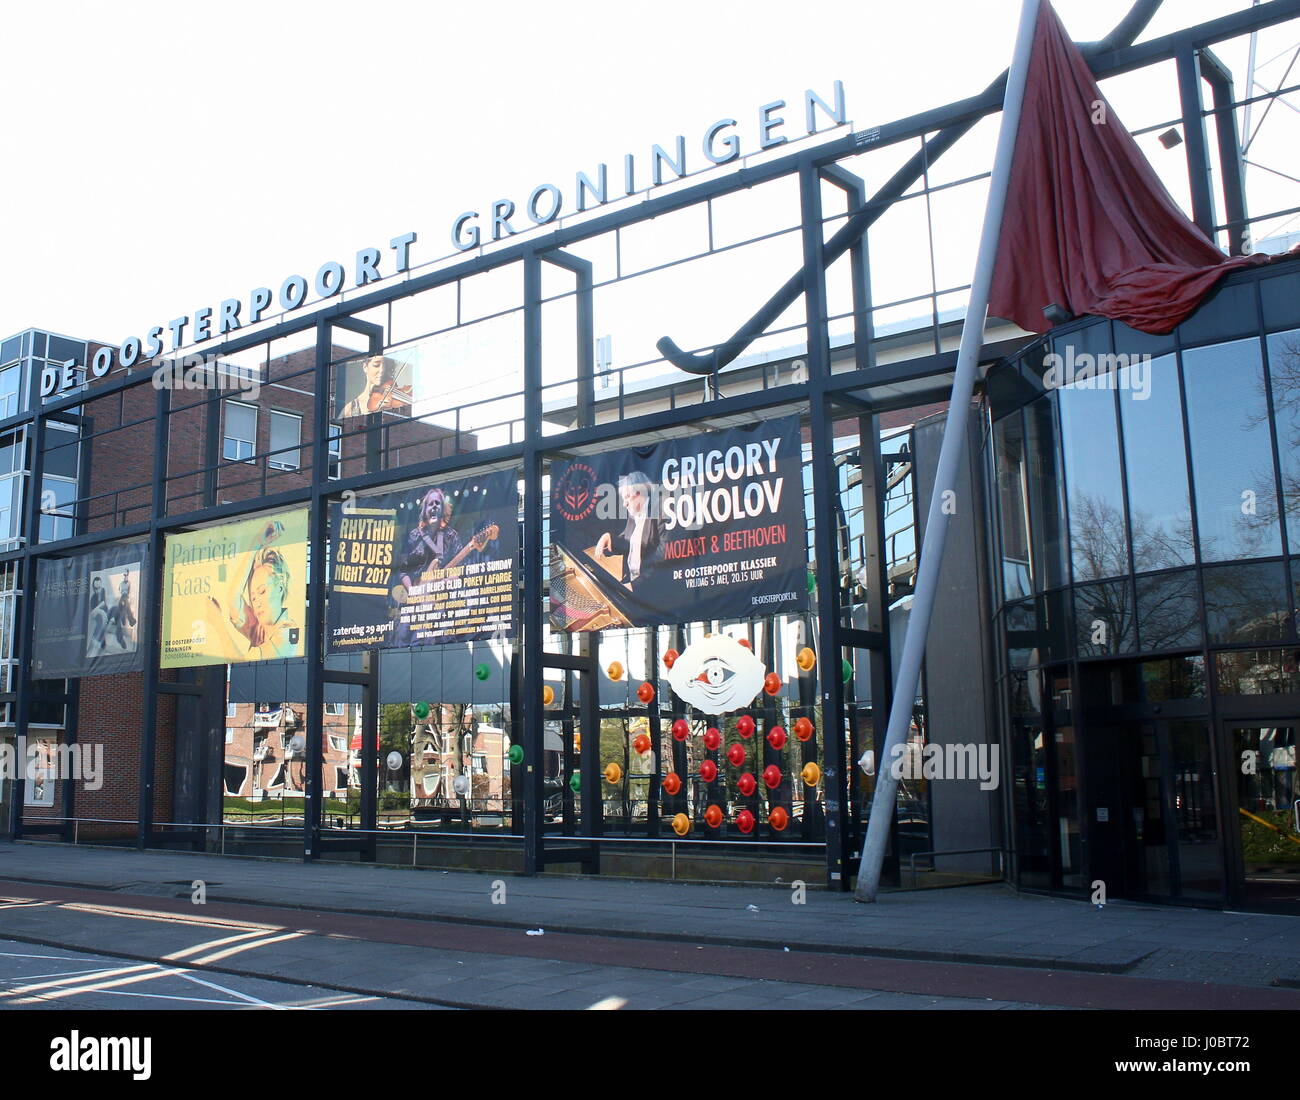 Centre culturel De Oosterpoort, Groningen, Pays-Bas. Musique et arts du spectacle, scène principale du festival Eurosonic Noorderslag (janvier). Banque D'Images